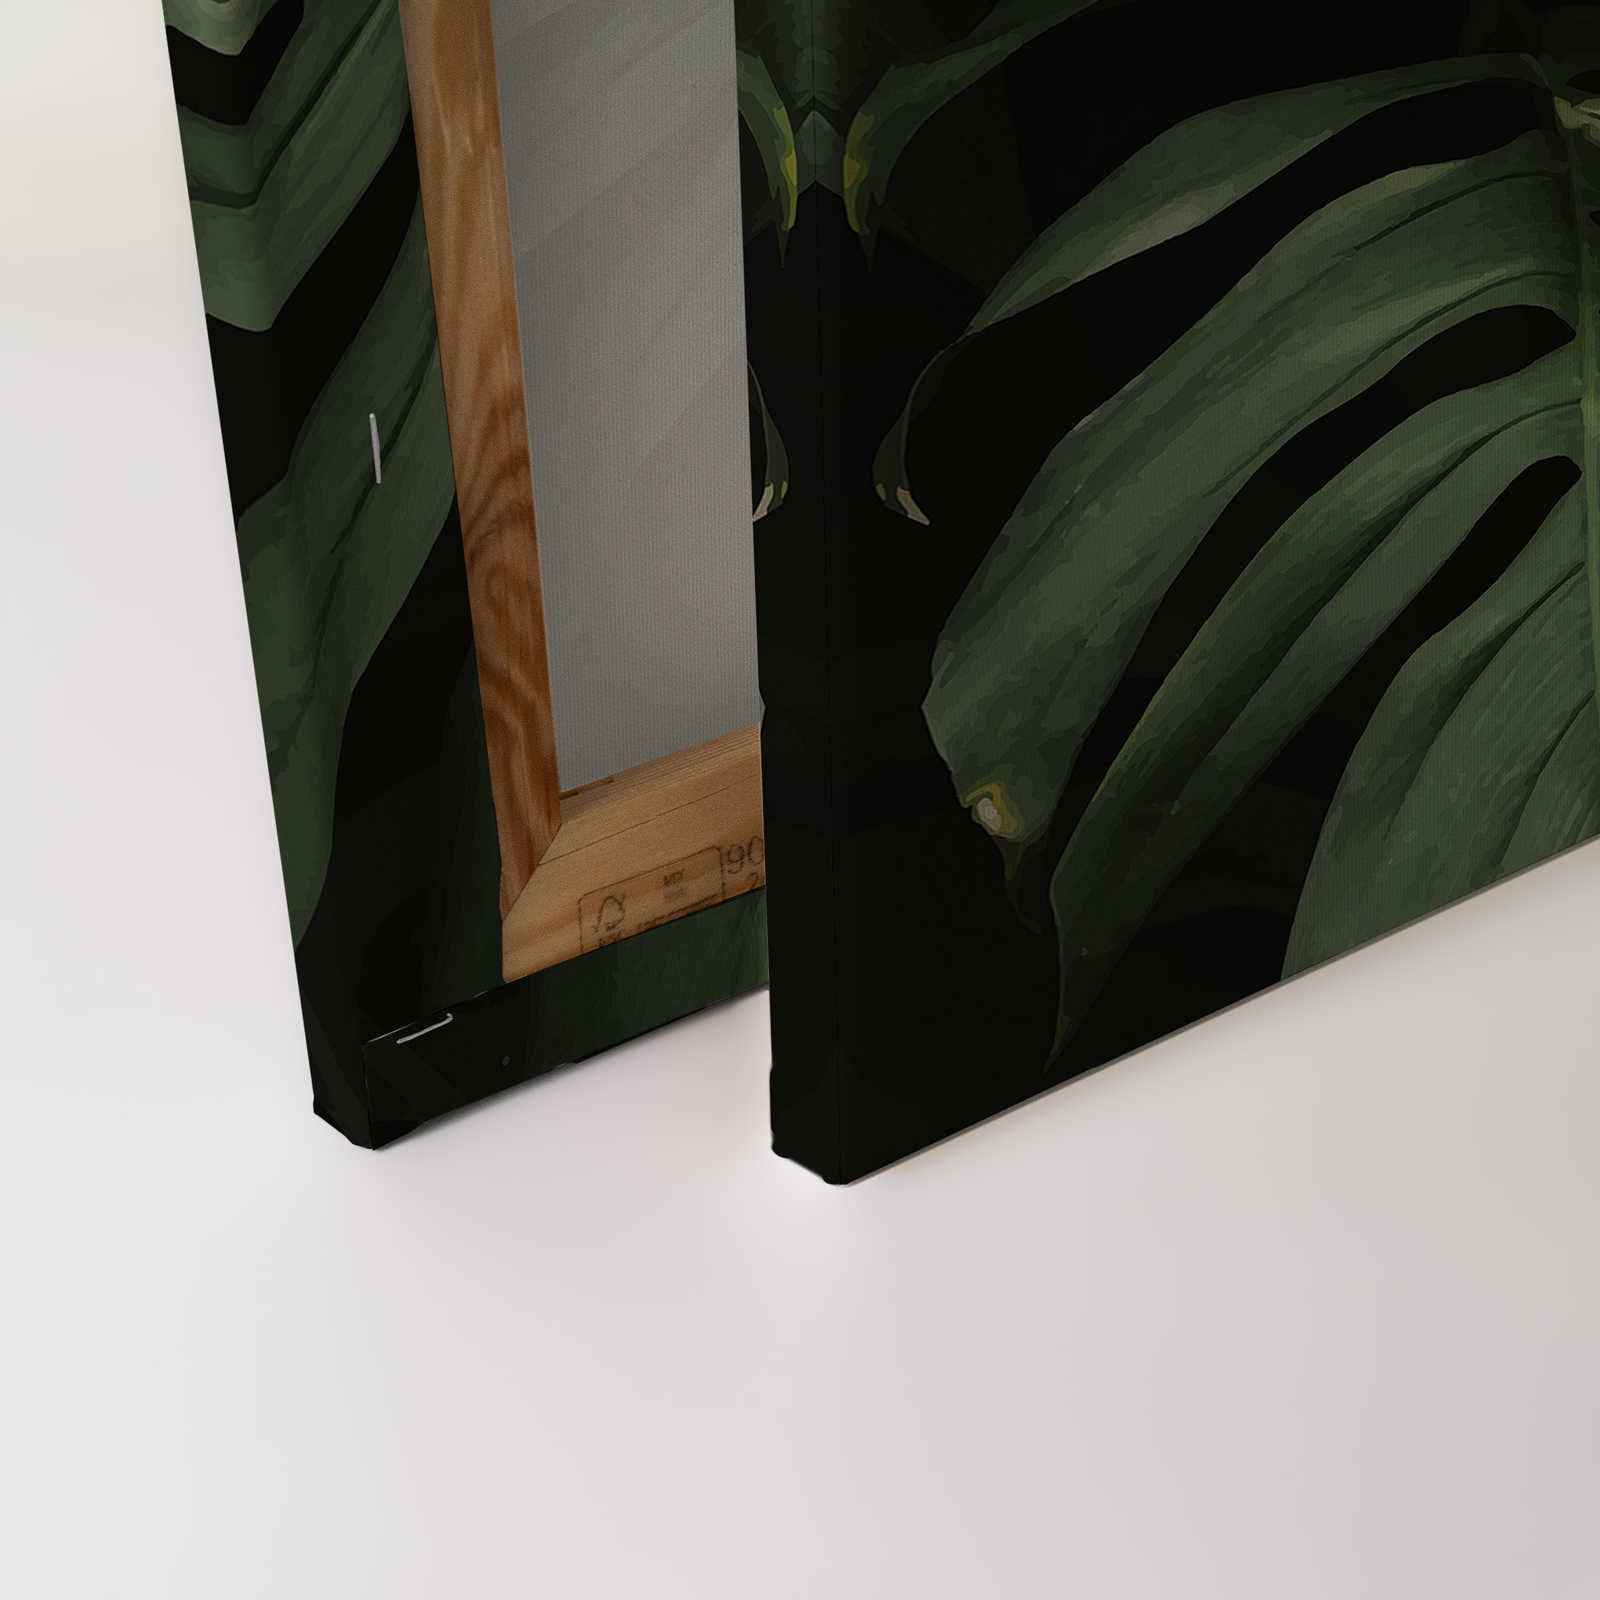             Canvas schilderij tropische jungle bladeren close-up - 0,90 m x 0,60 m
        